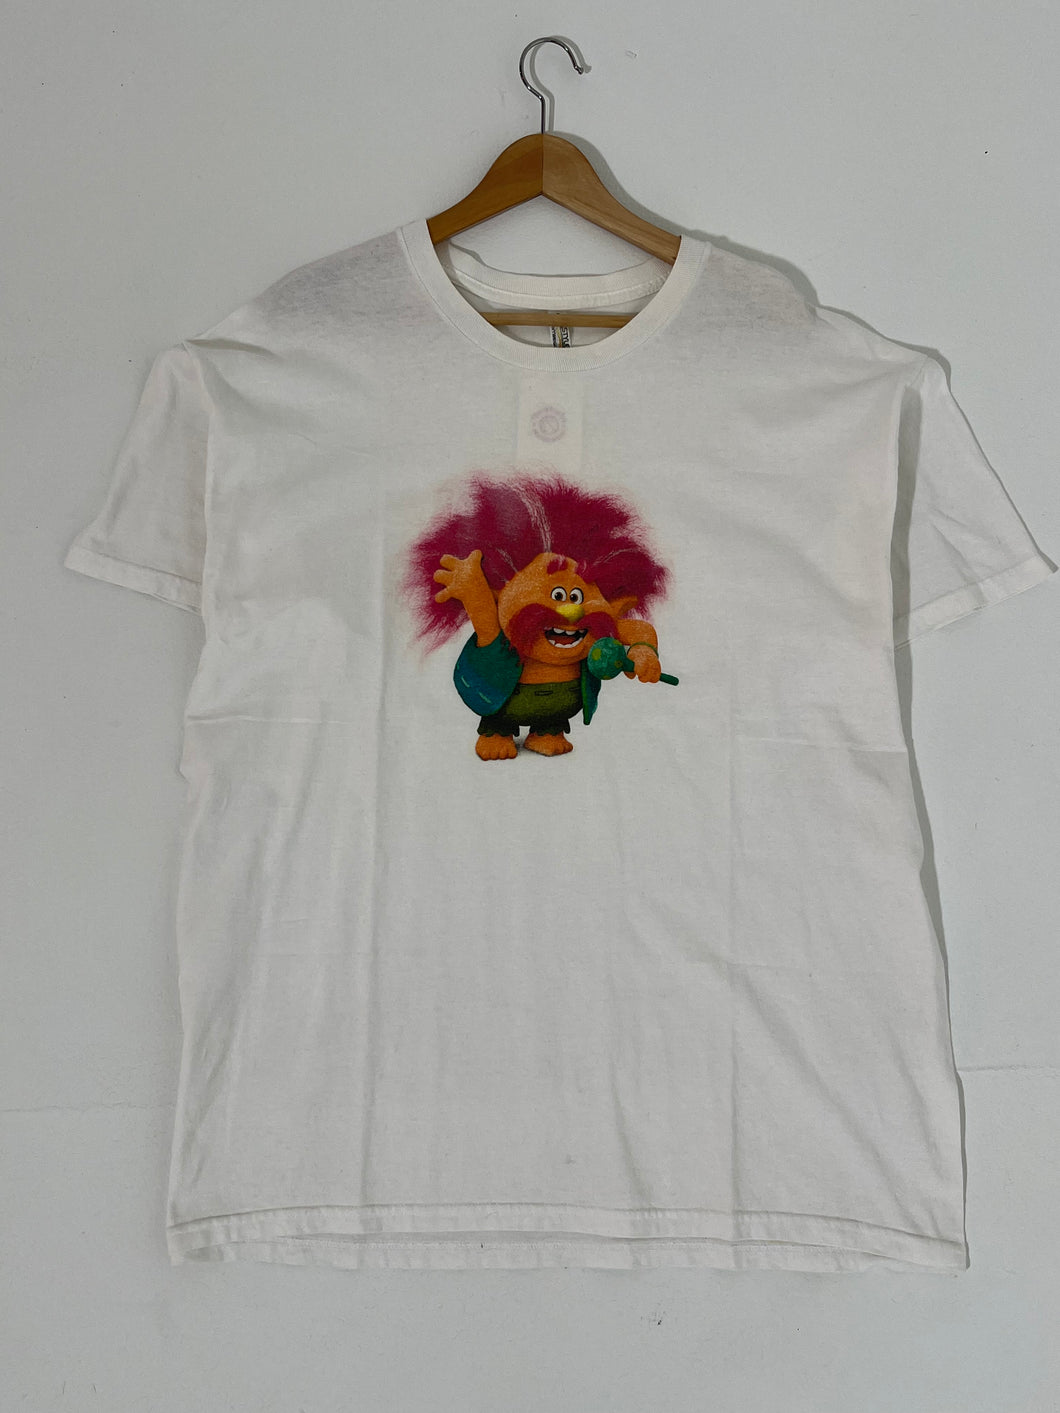 Y2K Trolls Movie T-Shirt Sz. XL